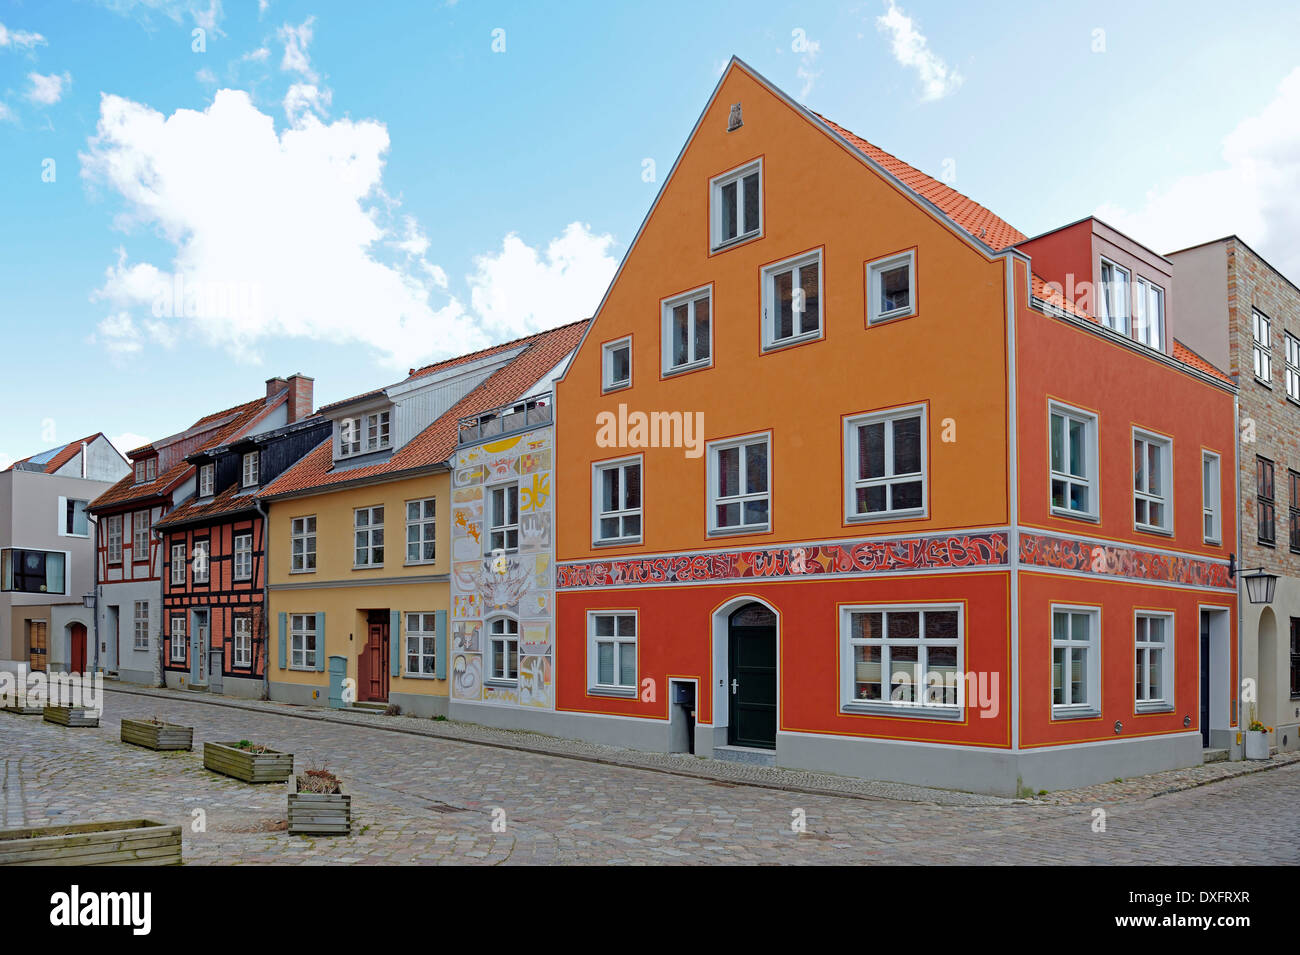 Rénové des maisons à colombage, centre ville historique, ville hanséatique de Stralsund, Mecklembourg-Poméranie-Occidentale, Allemagne Banque D'Images